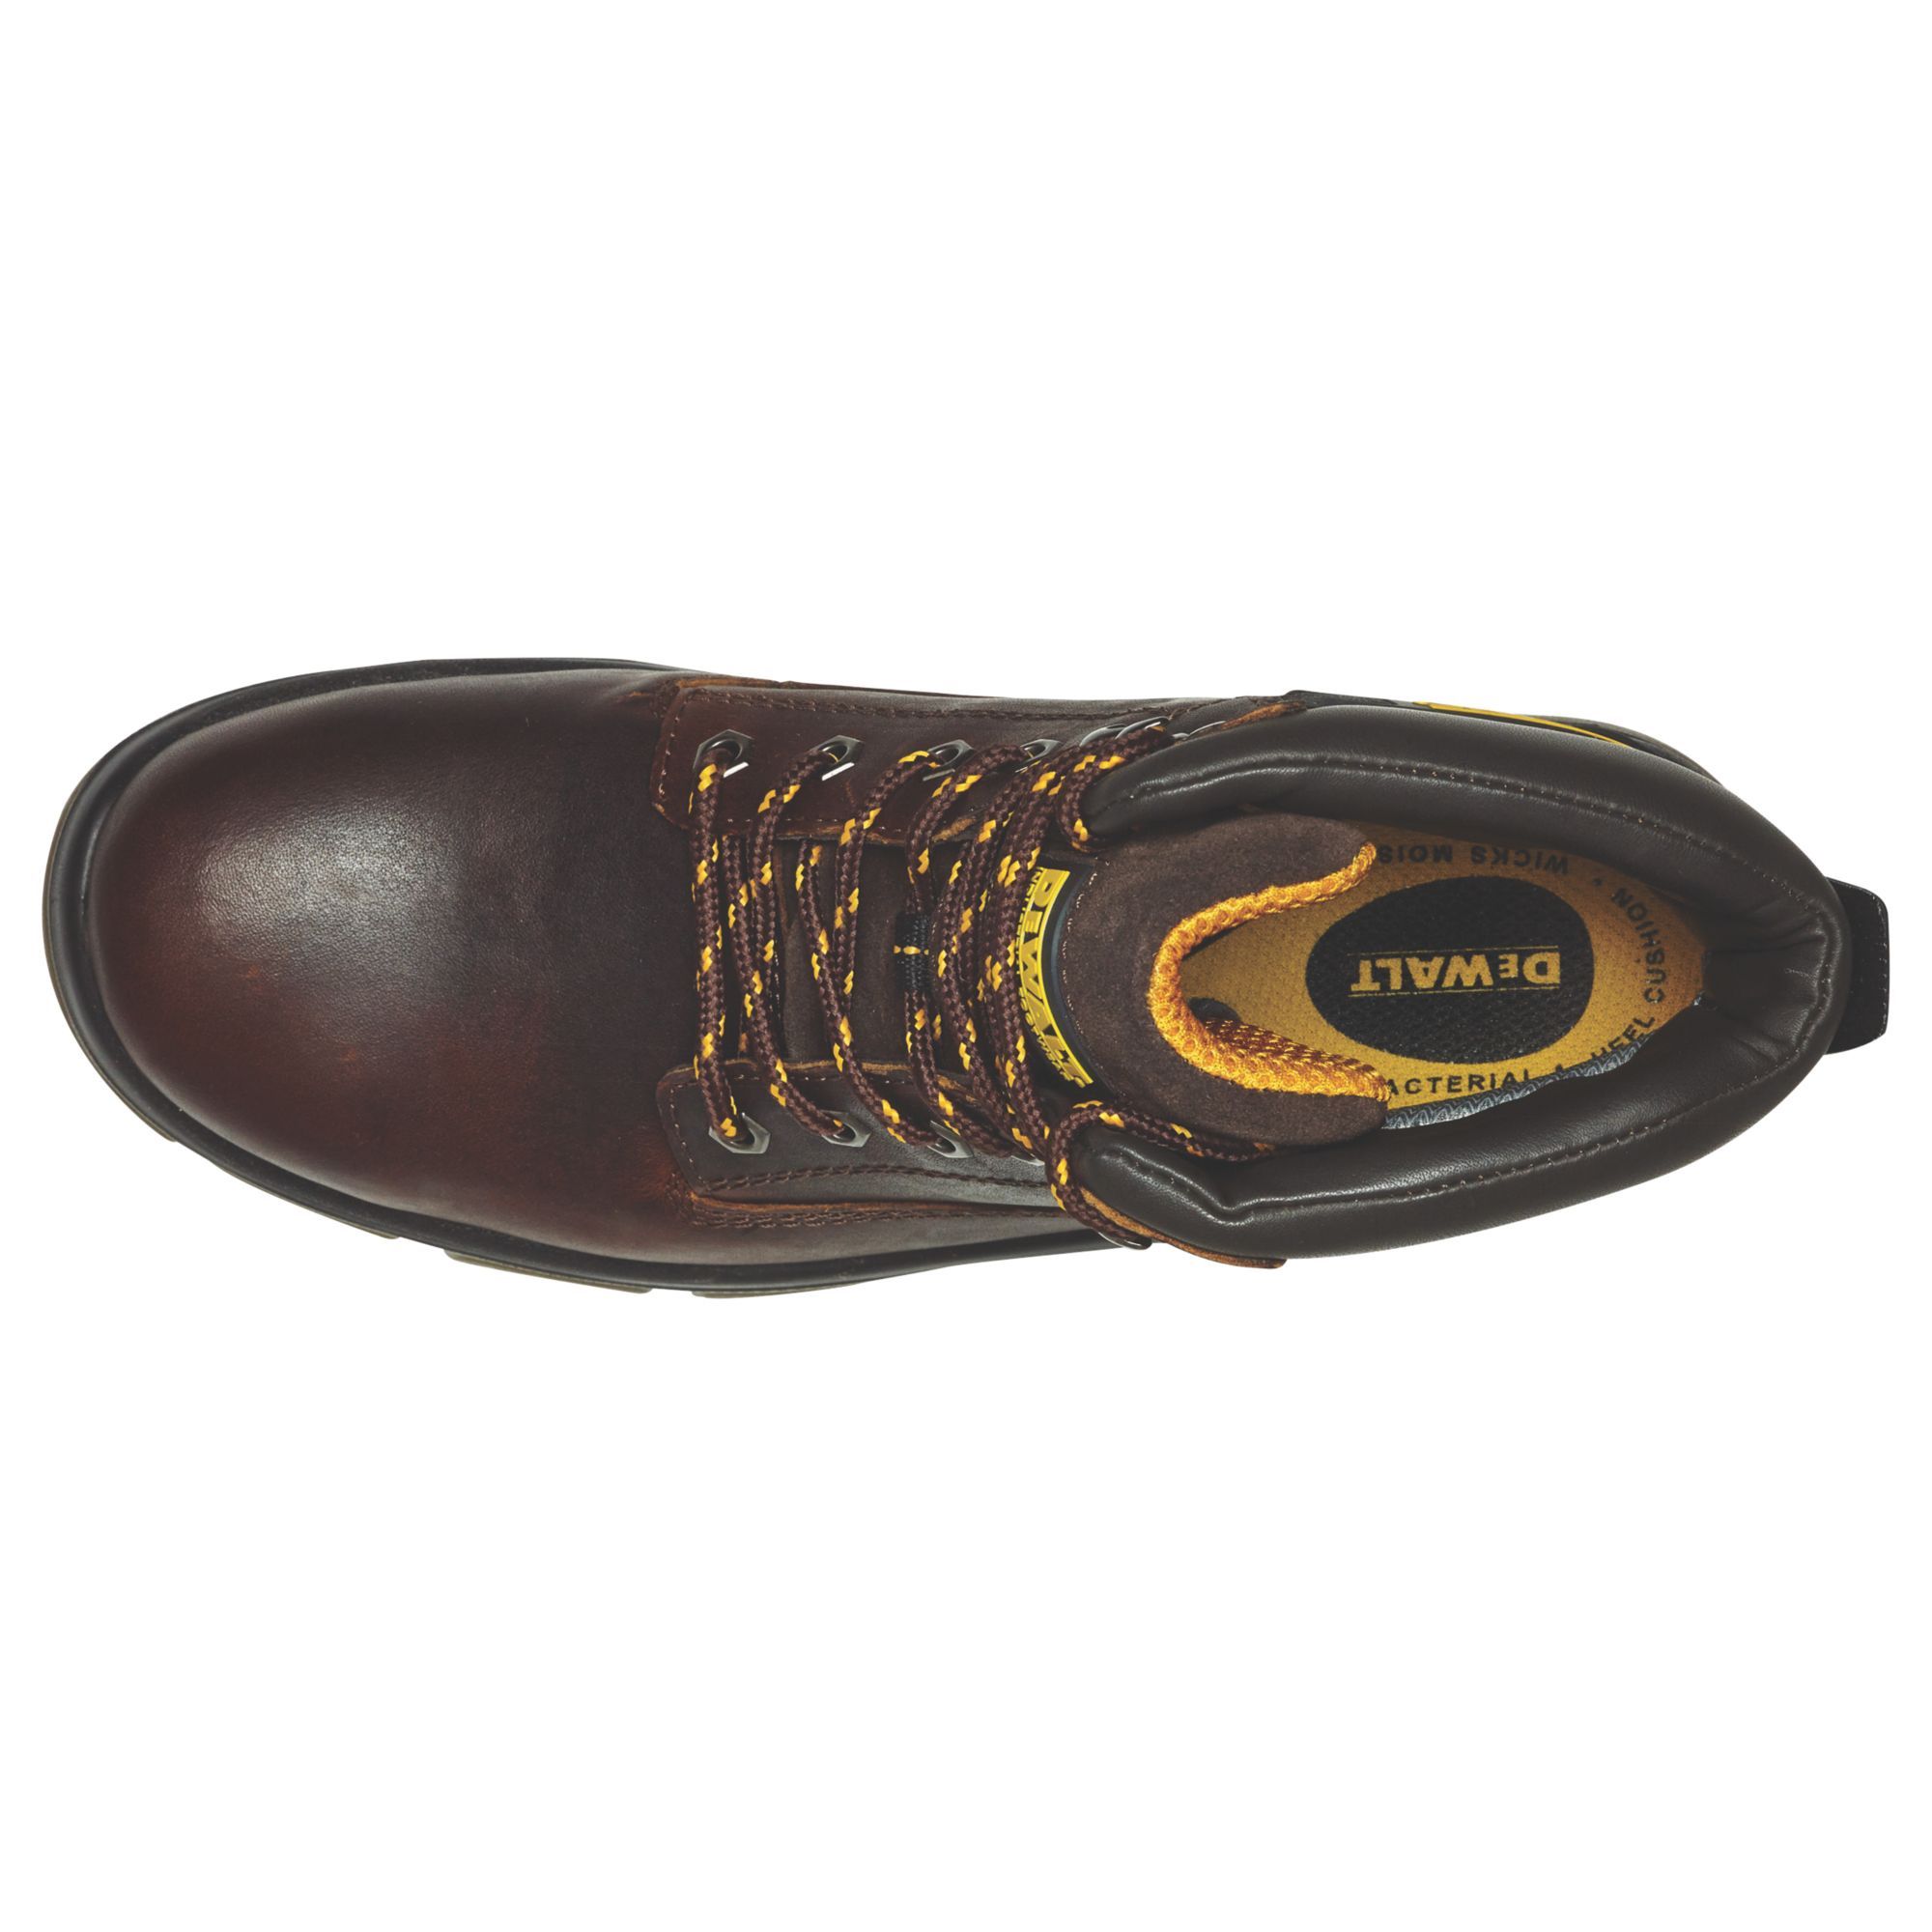 DeWalt Titanium Men's Tan Safety boots, Size 7